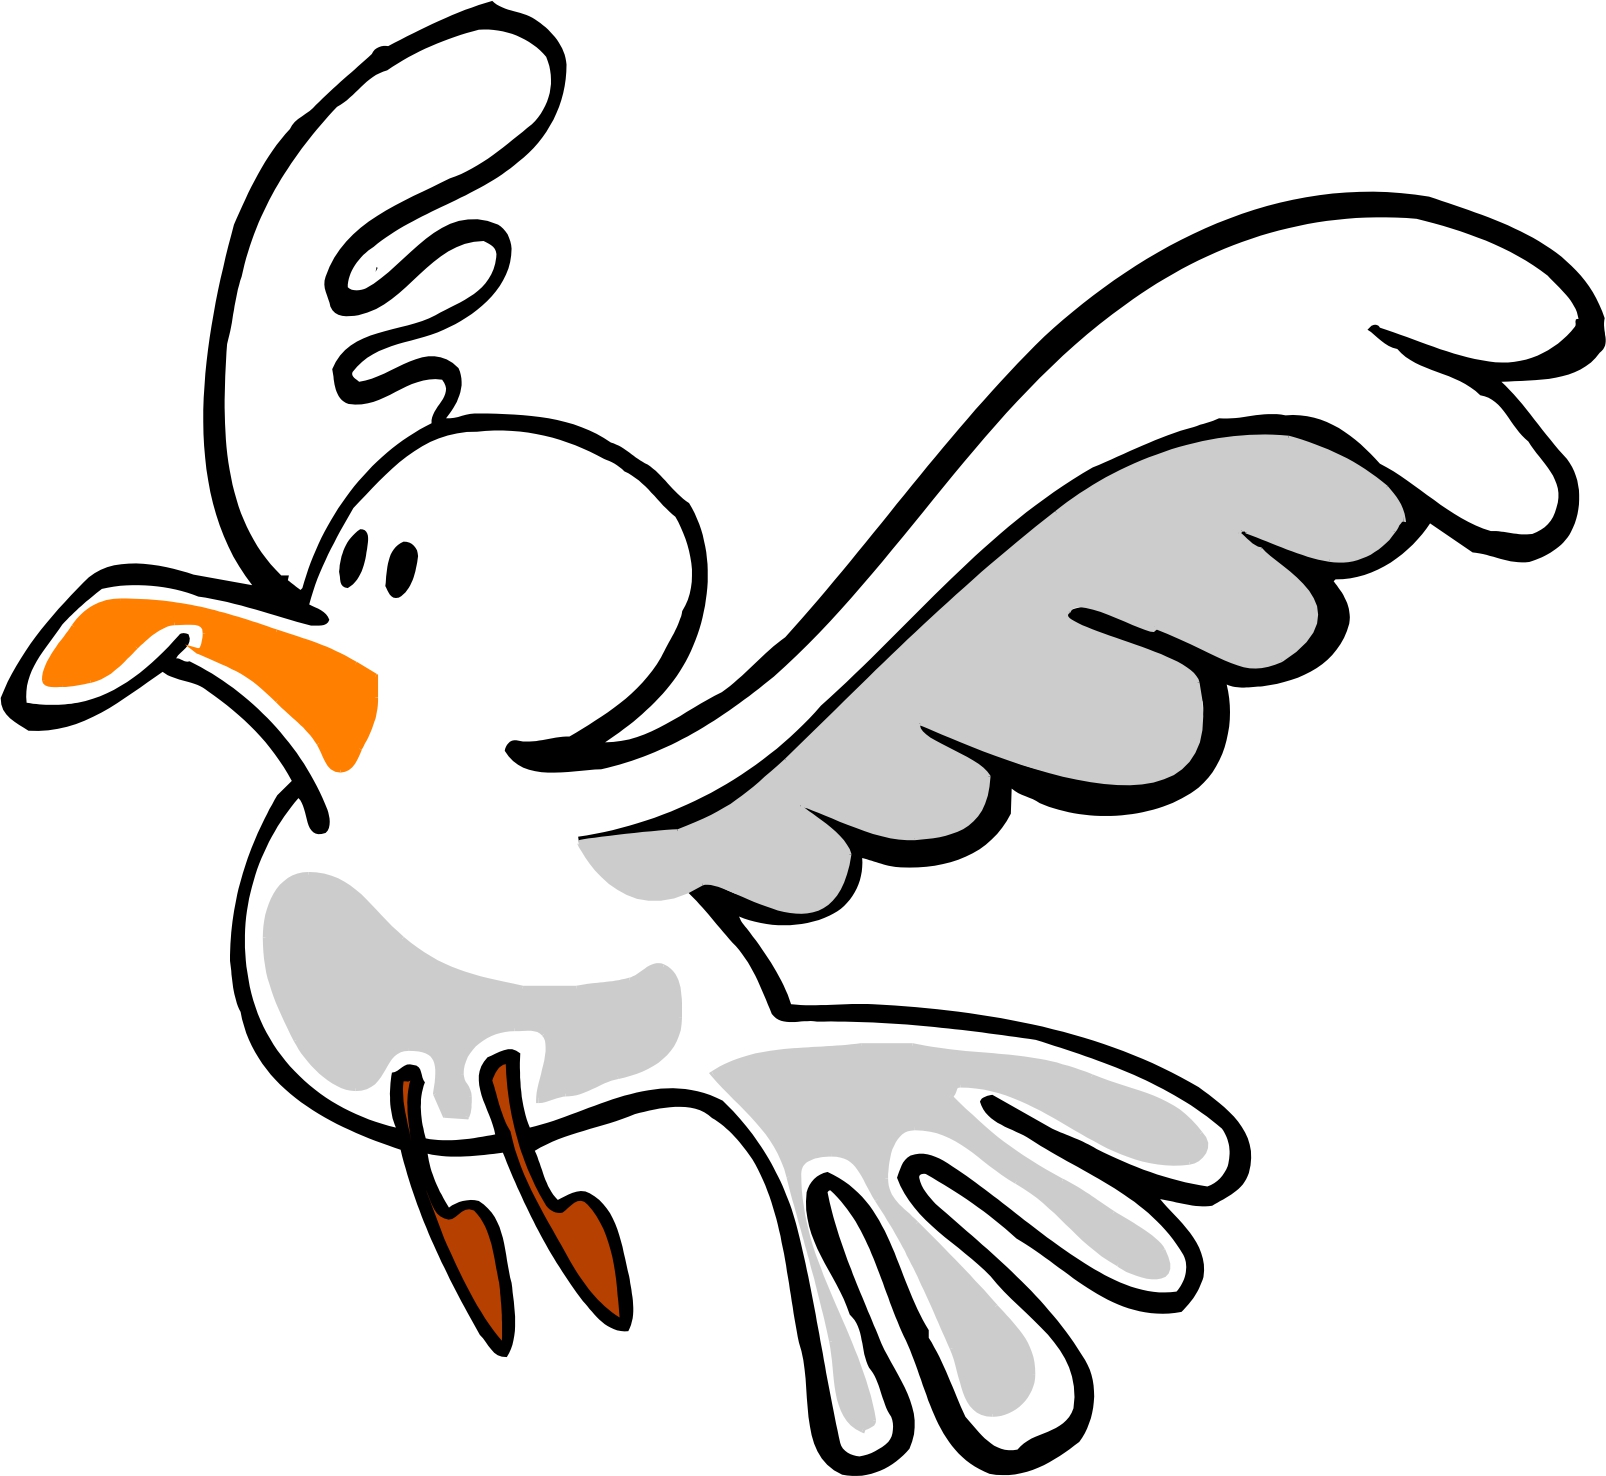 Clipart Flying Seagull Royalt